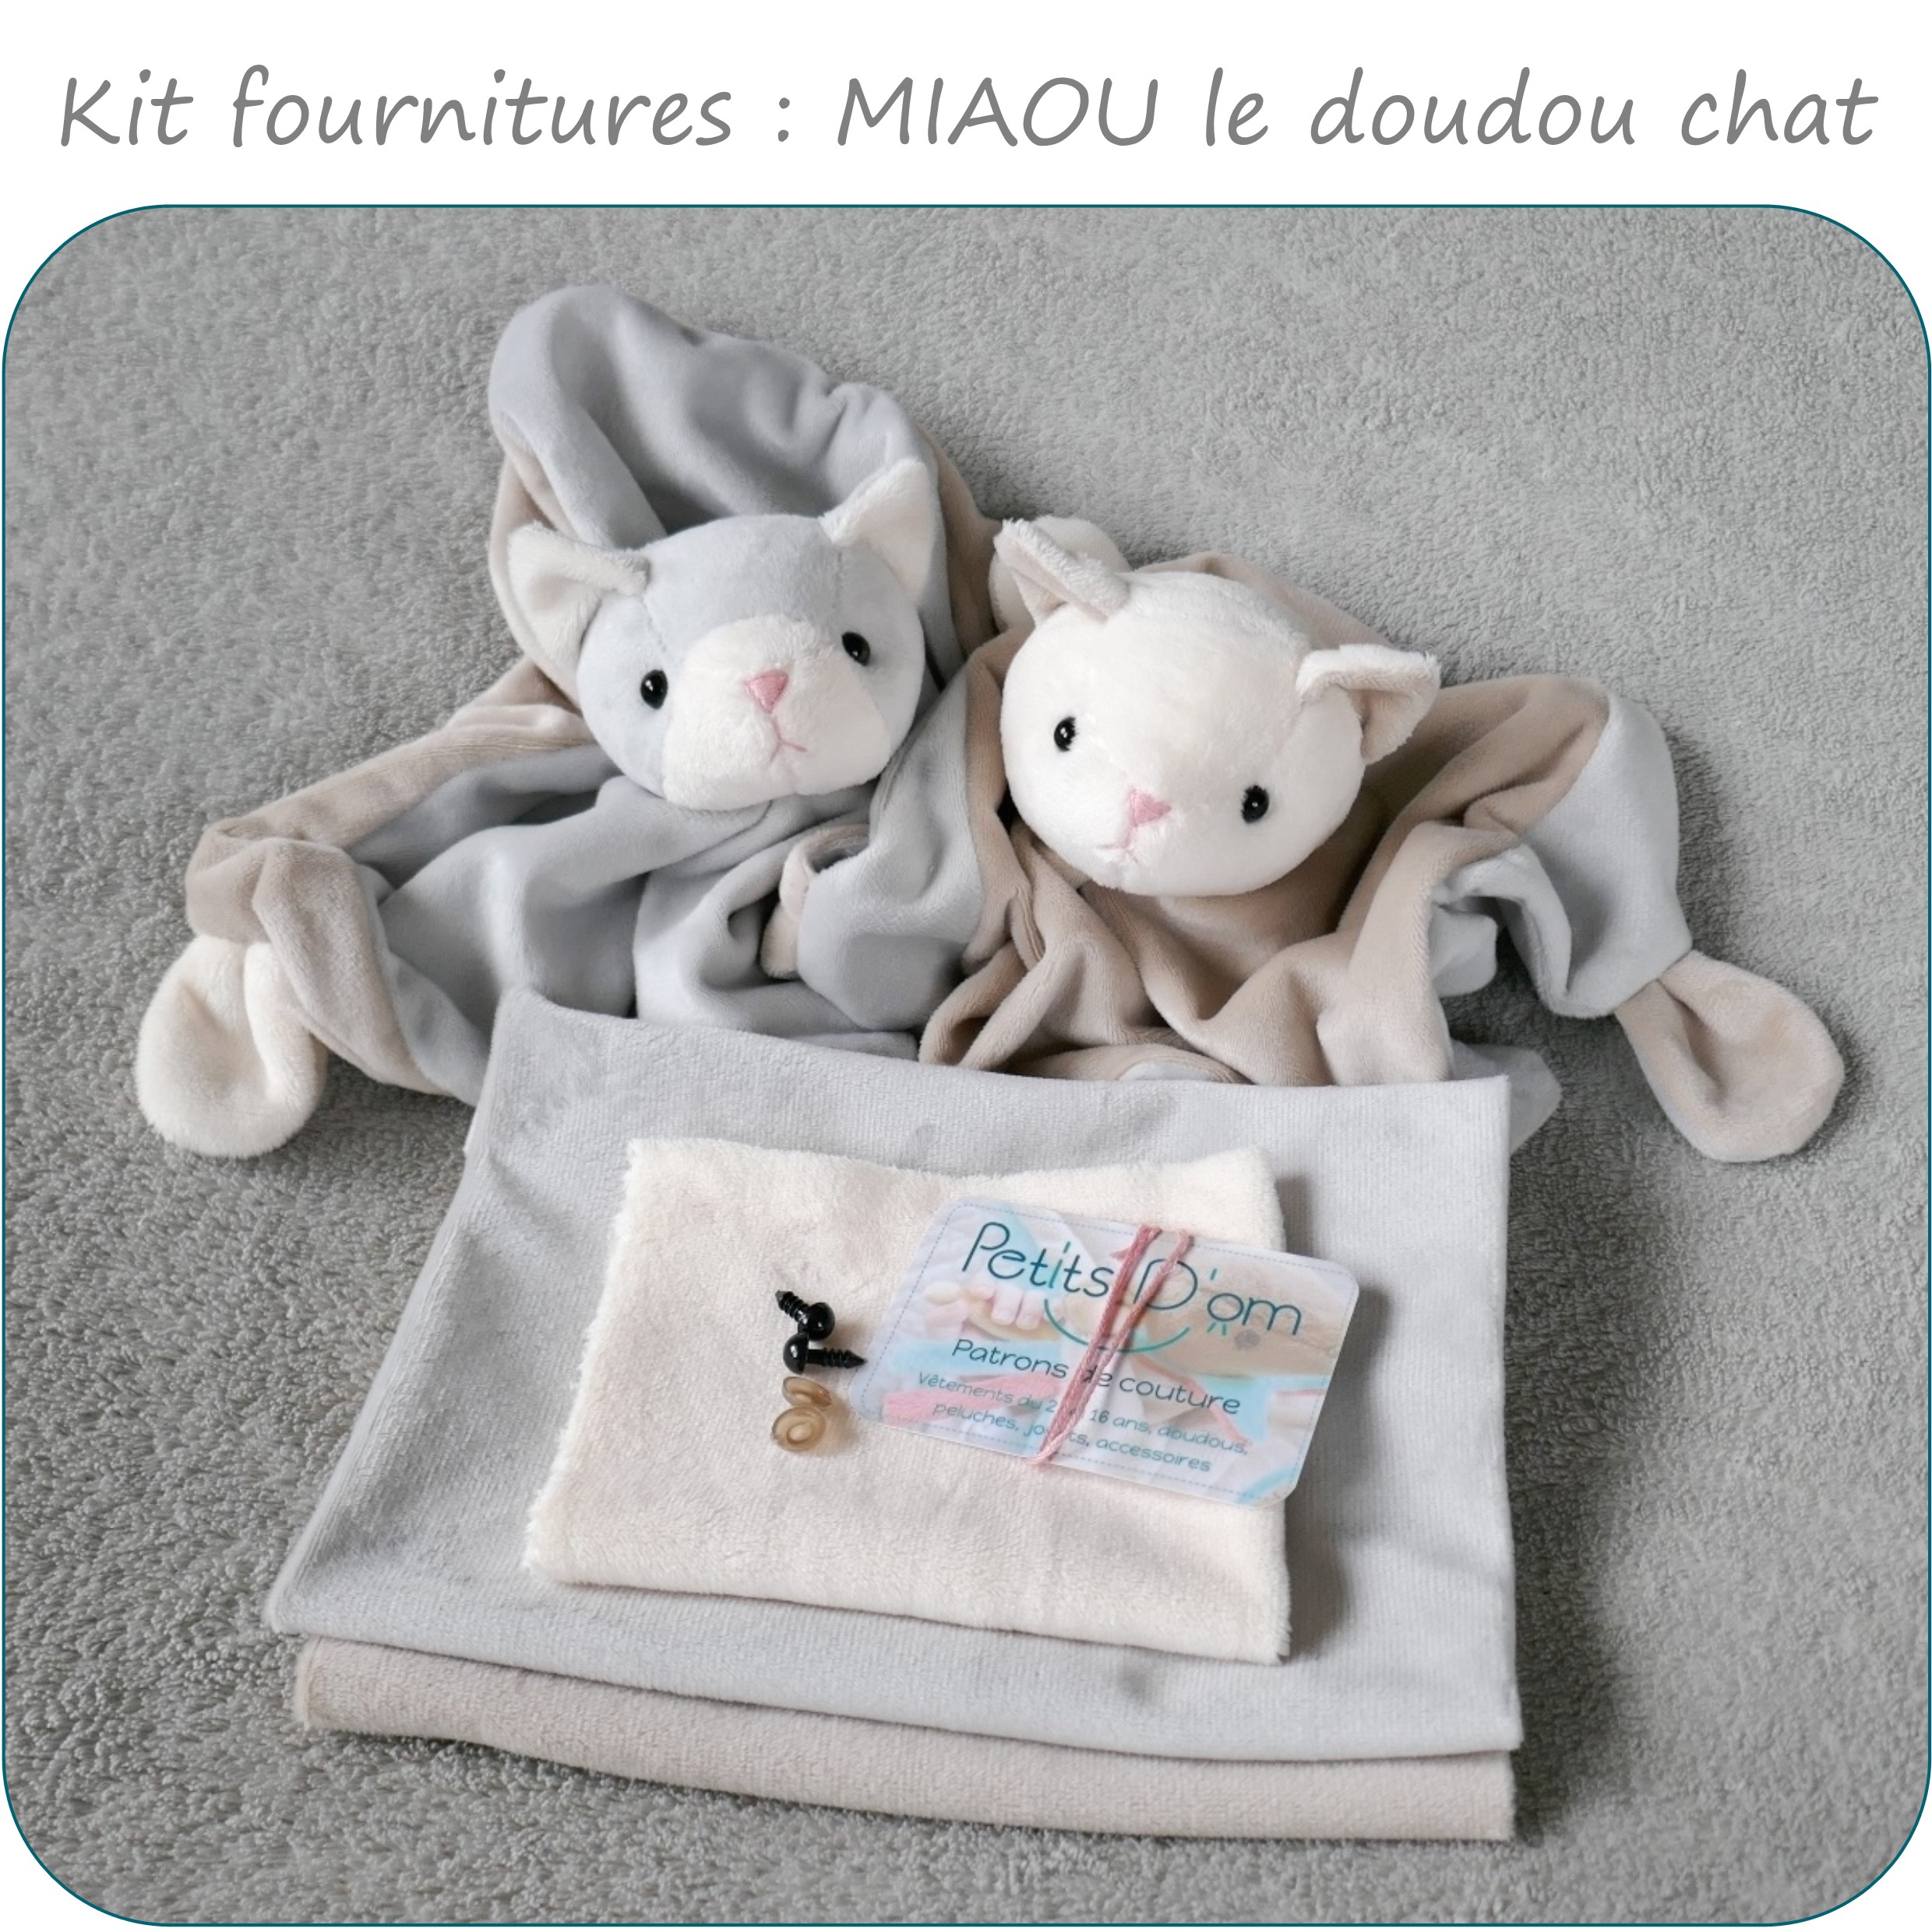 Kit fournitures MIAOU le doudou chat - Petits D'om